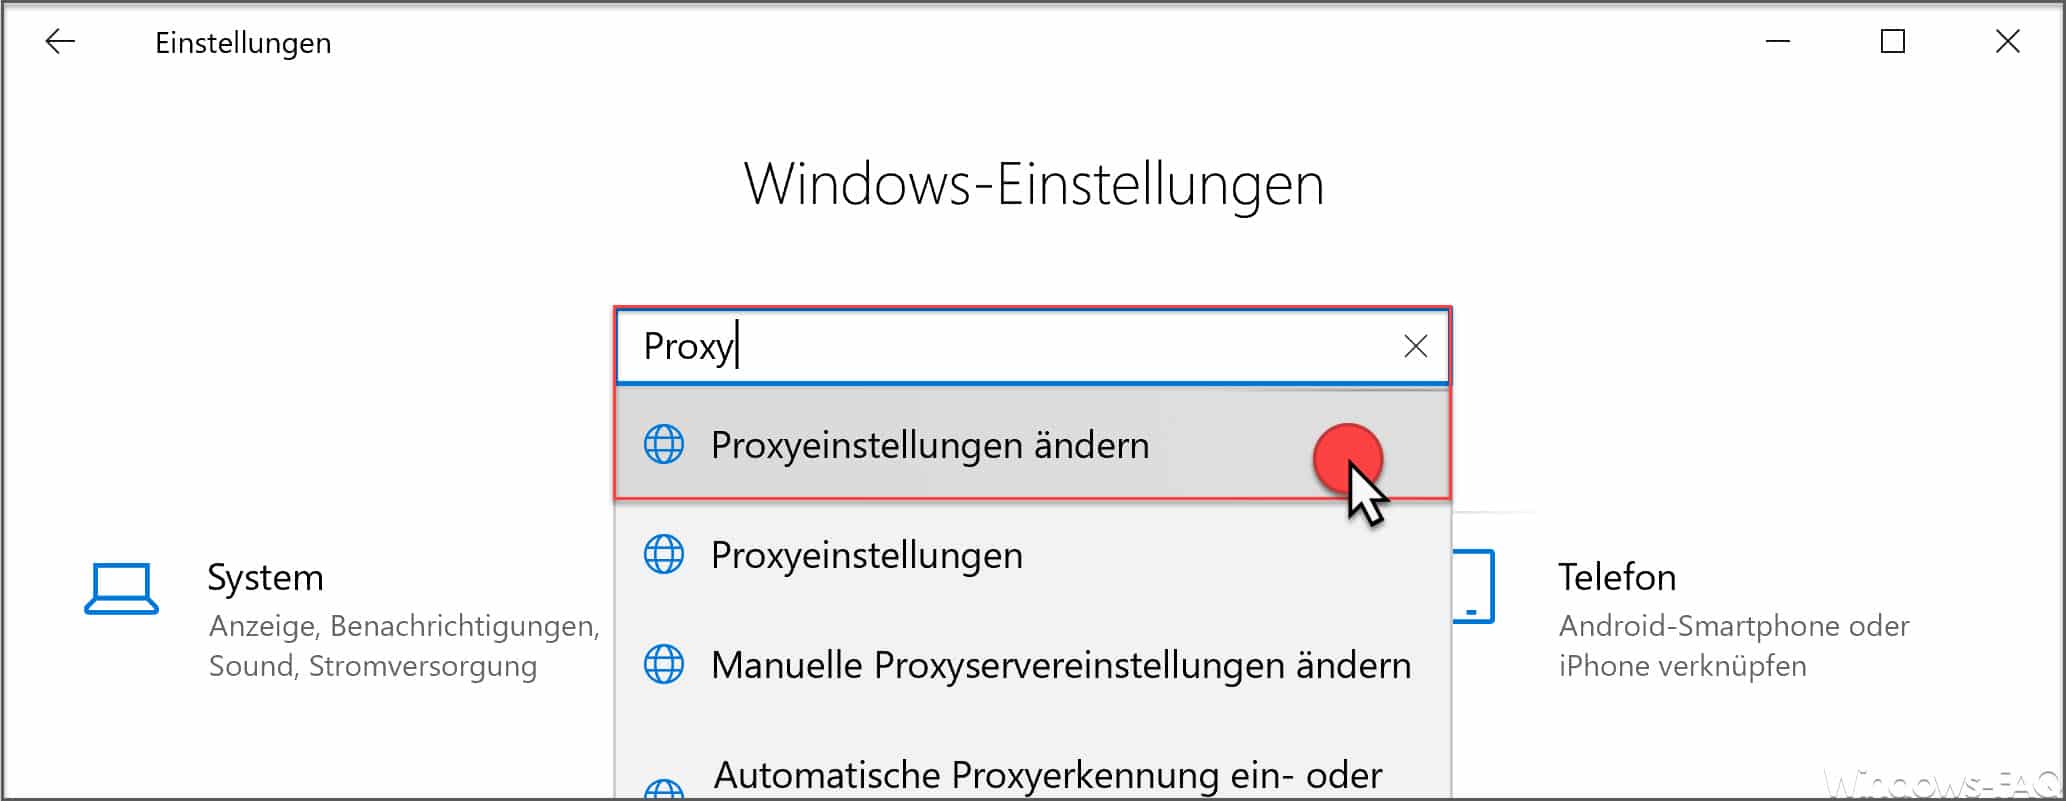 Proxyeinstellungen ändern Windows 10